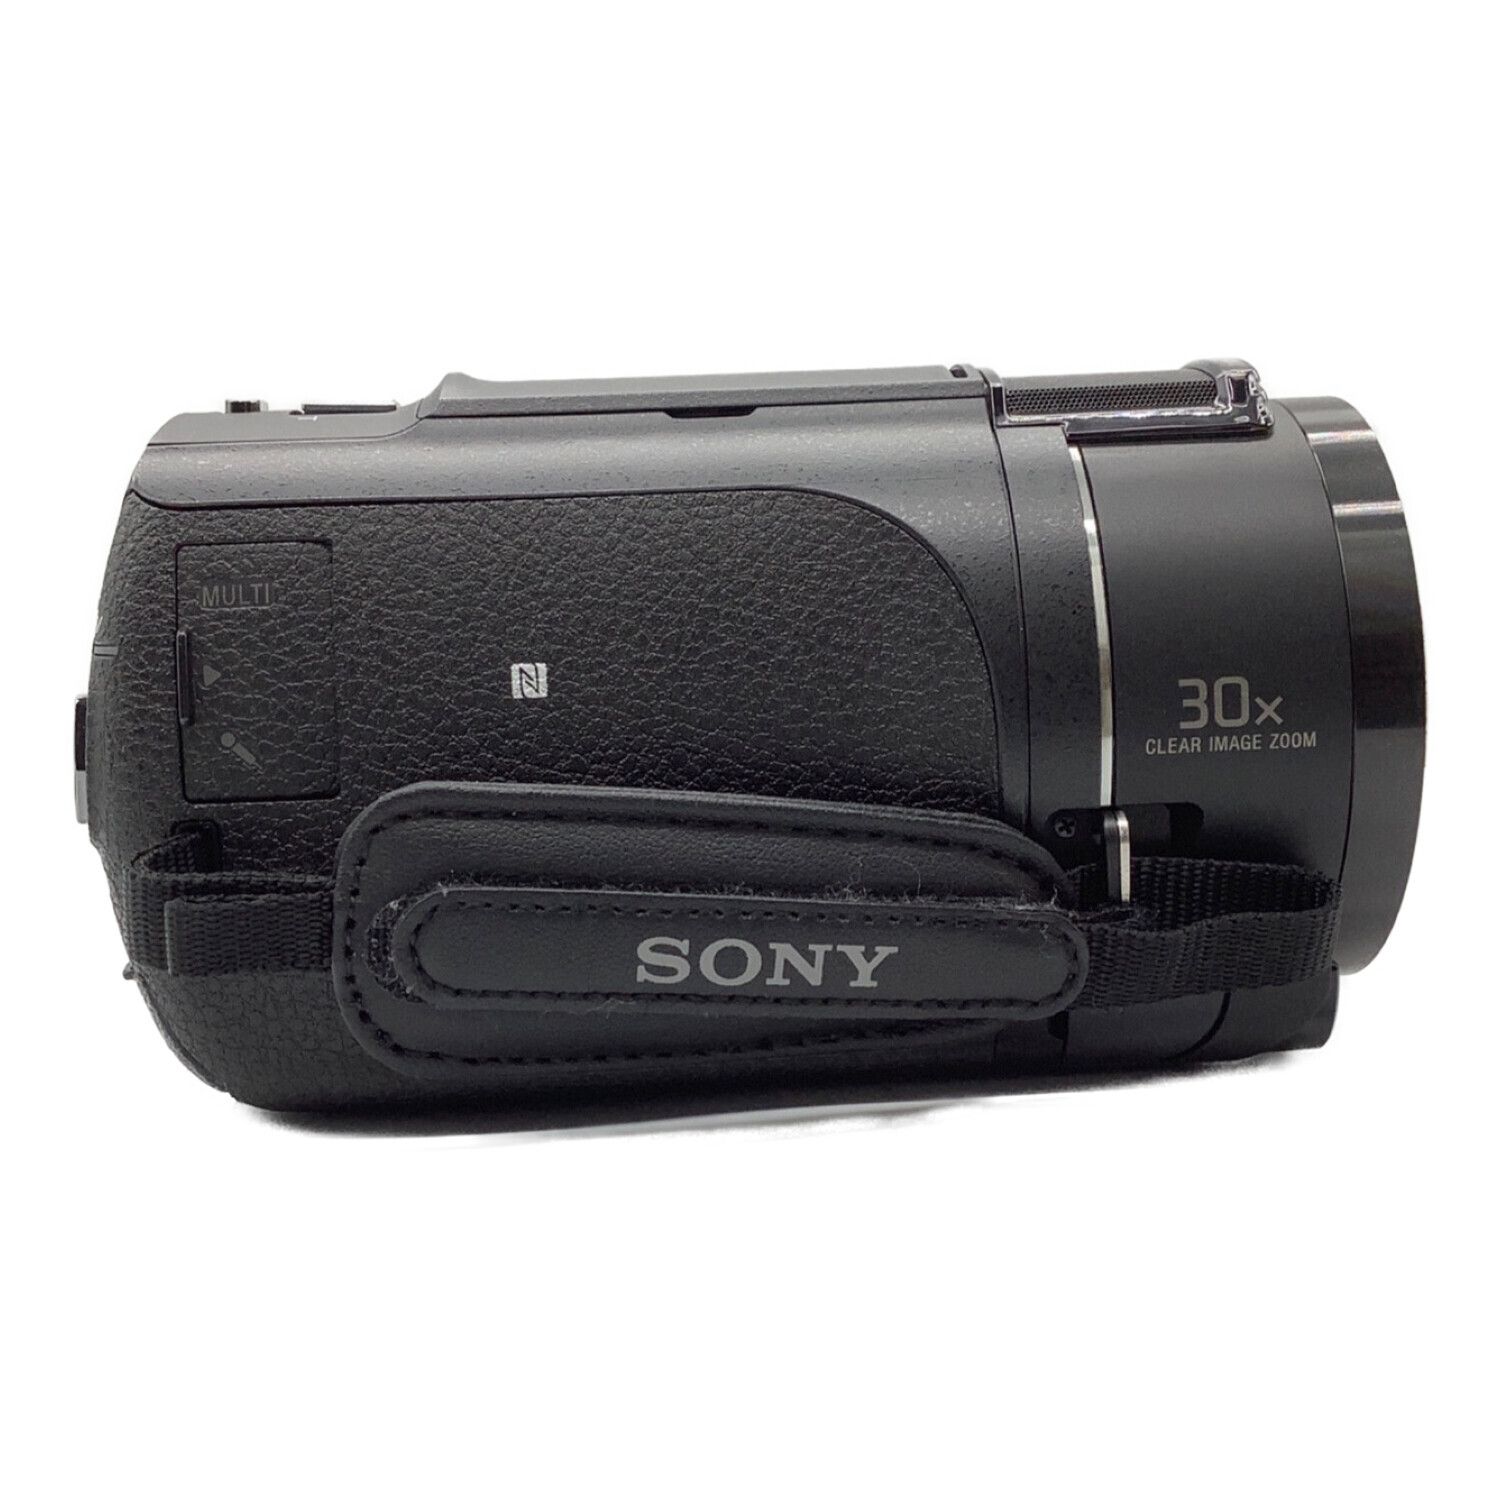 SONY (ソニー) 4Kハンディカメラ 2016年製 857万画素 SDXCカード対応 